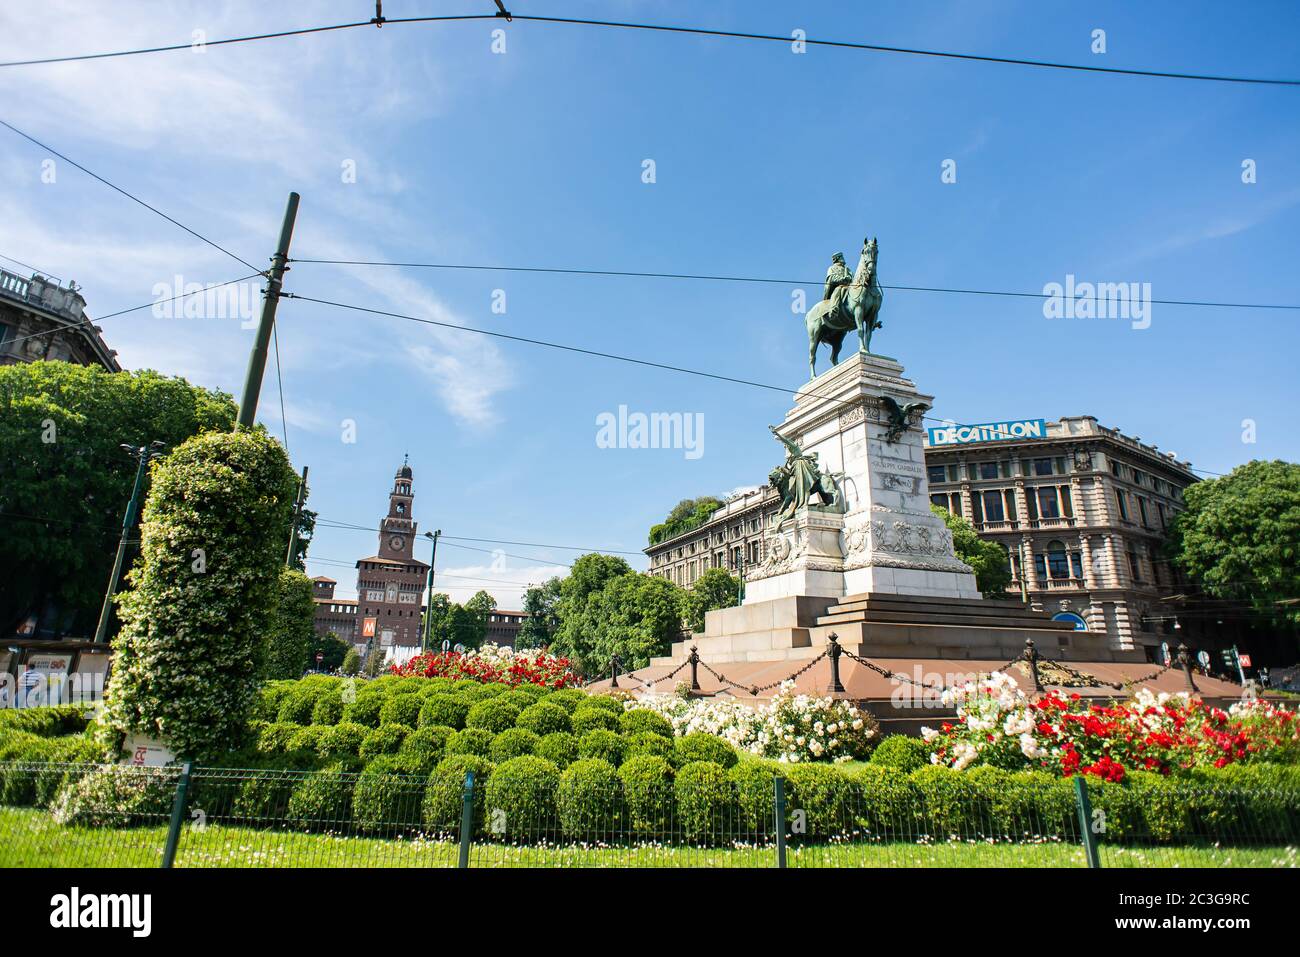 Milan. Italy - May 21, 2019: Giuseppe Garibaldi Monument in Milan and Sforza Castle (Castello Sforzesco). Cairoli Square. Stock Photo